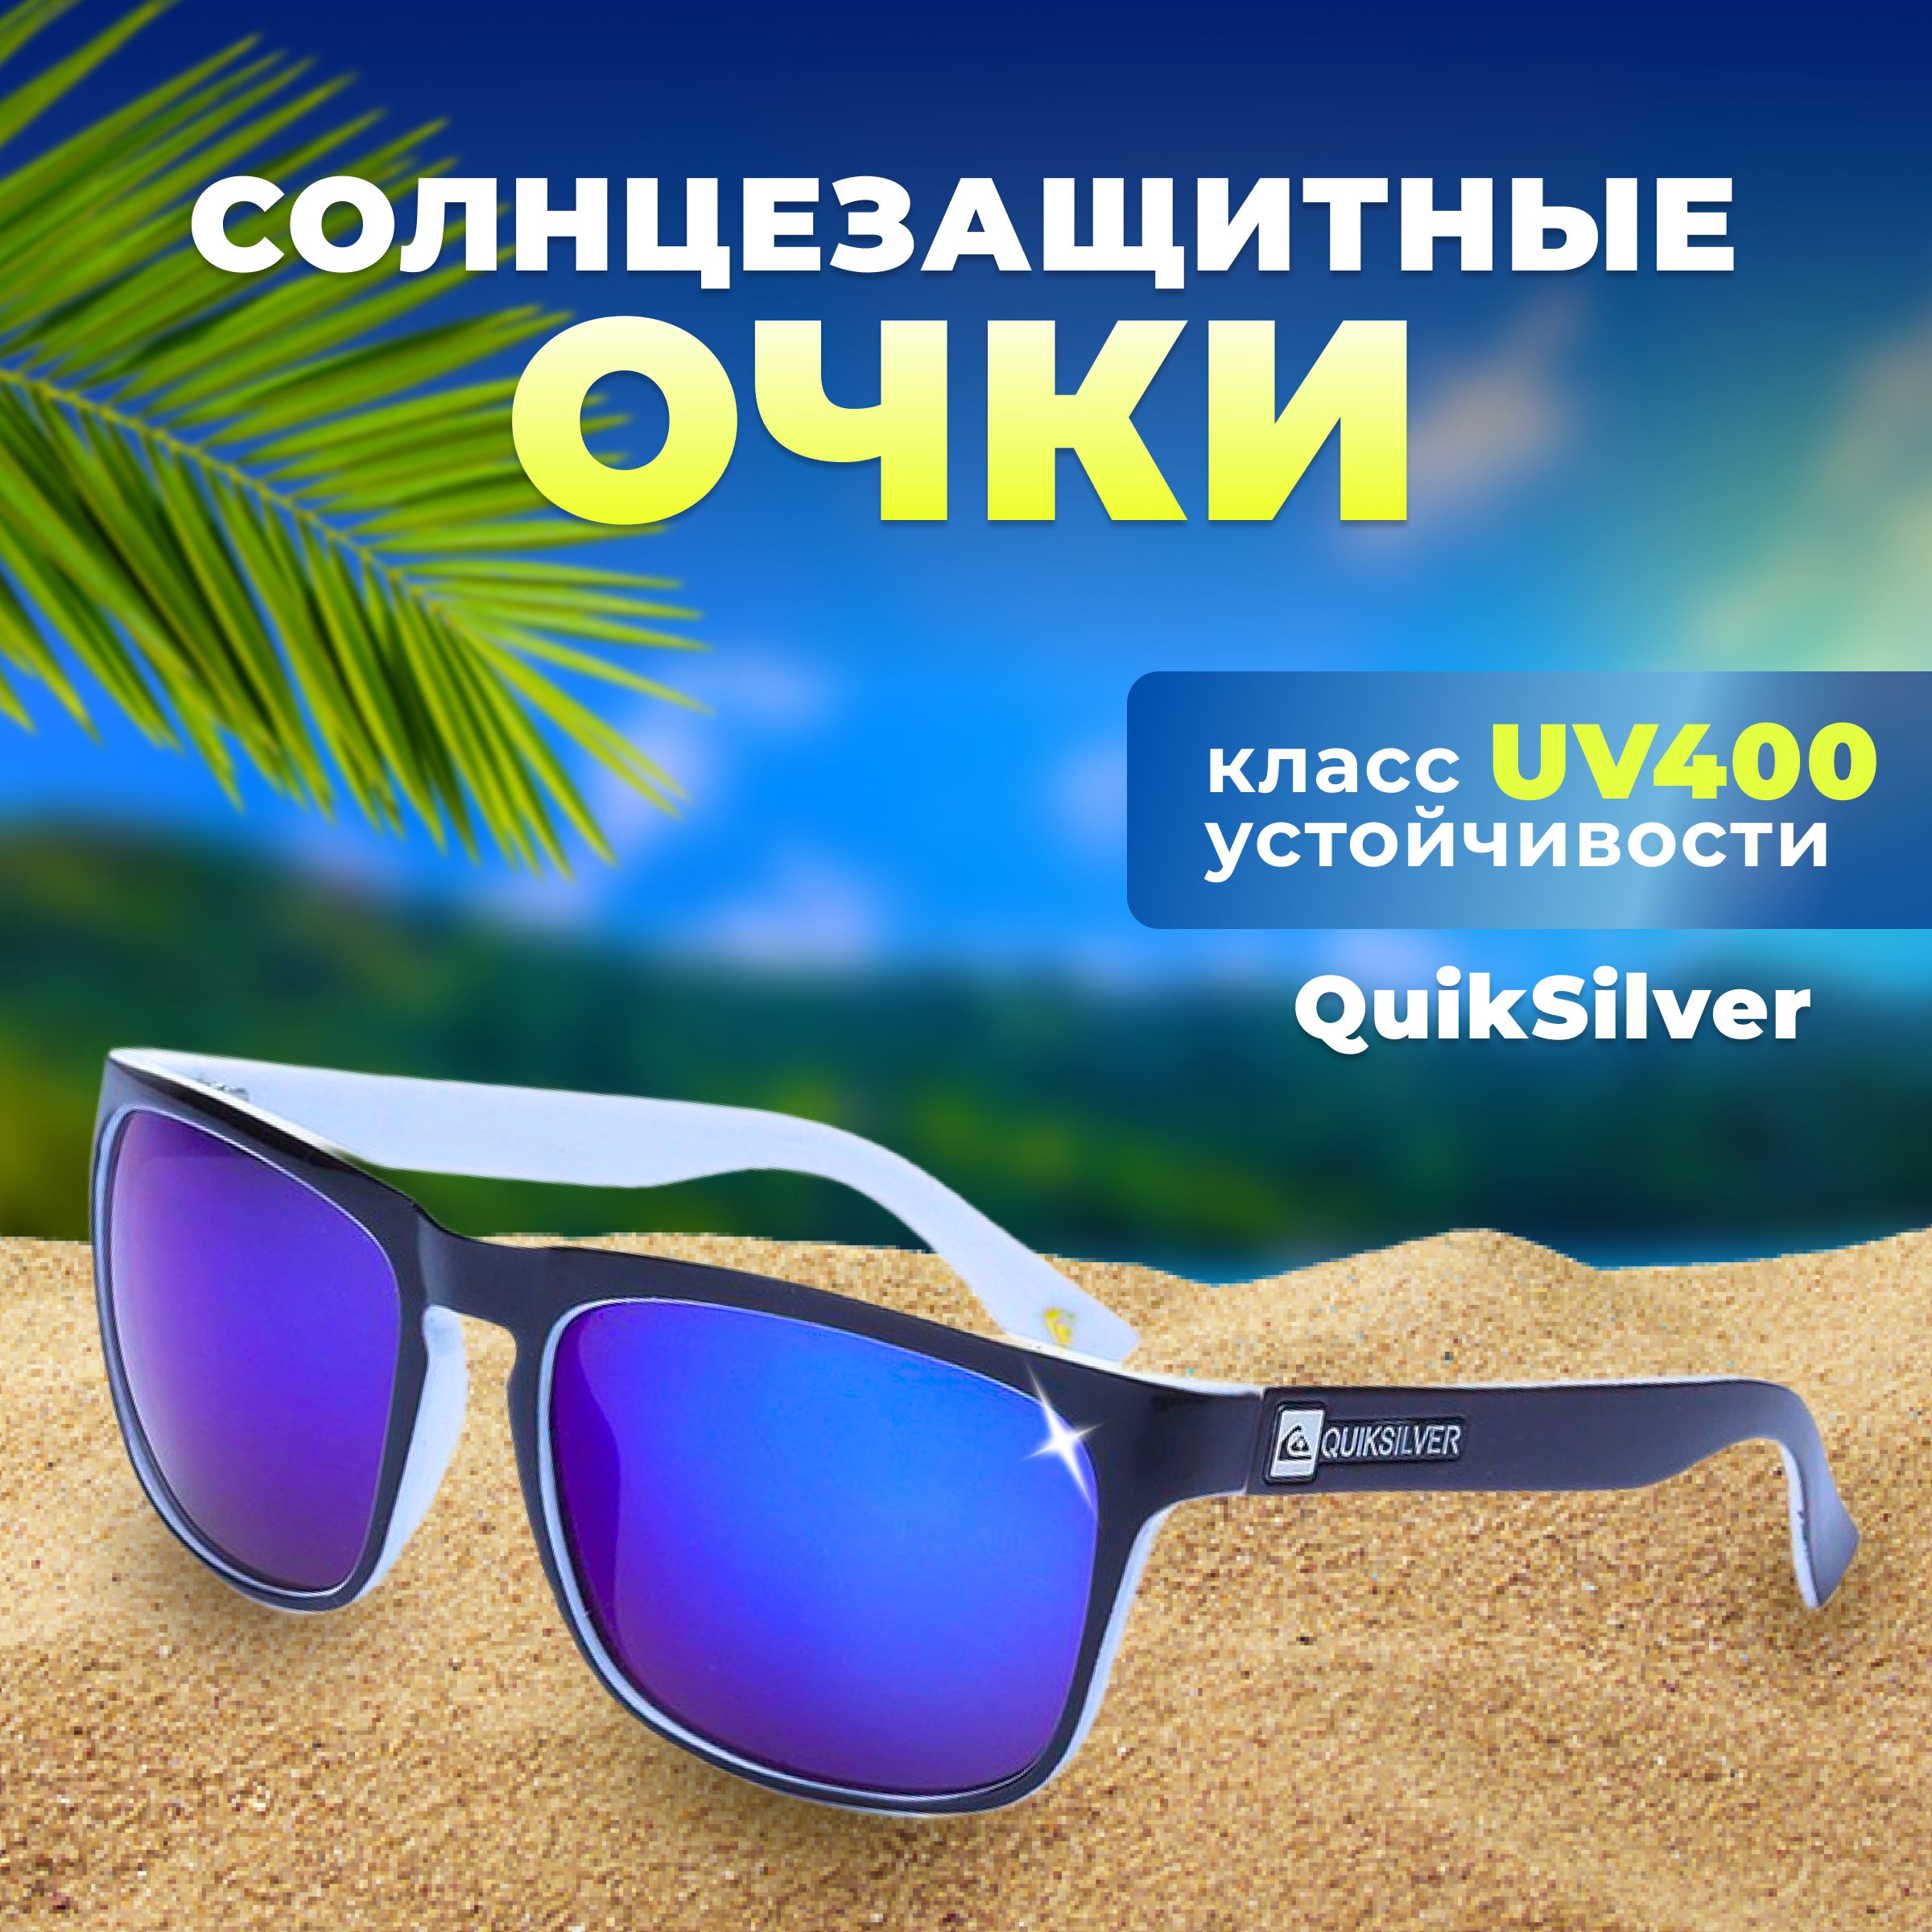 Спортивные солнцезащитные очки унисекс Quiksilver спортивные очки, синие